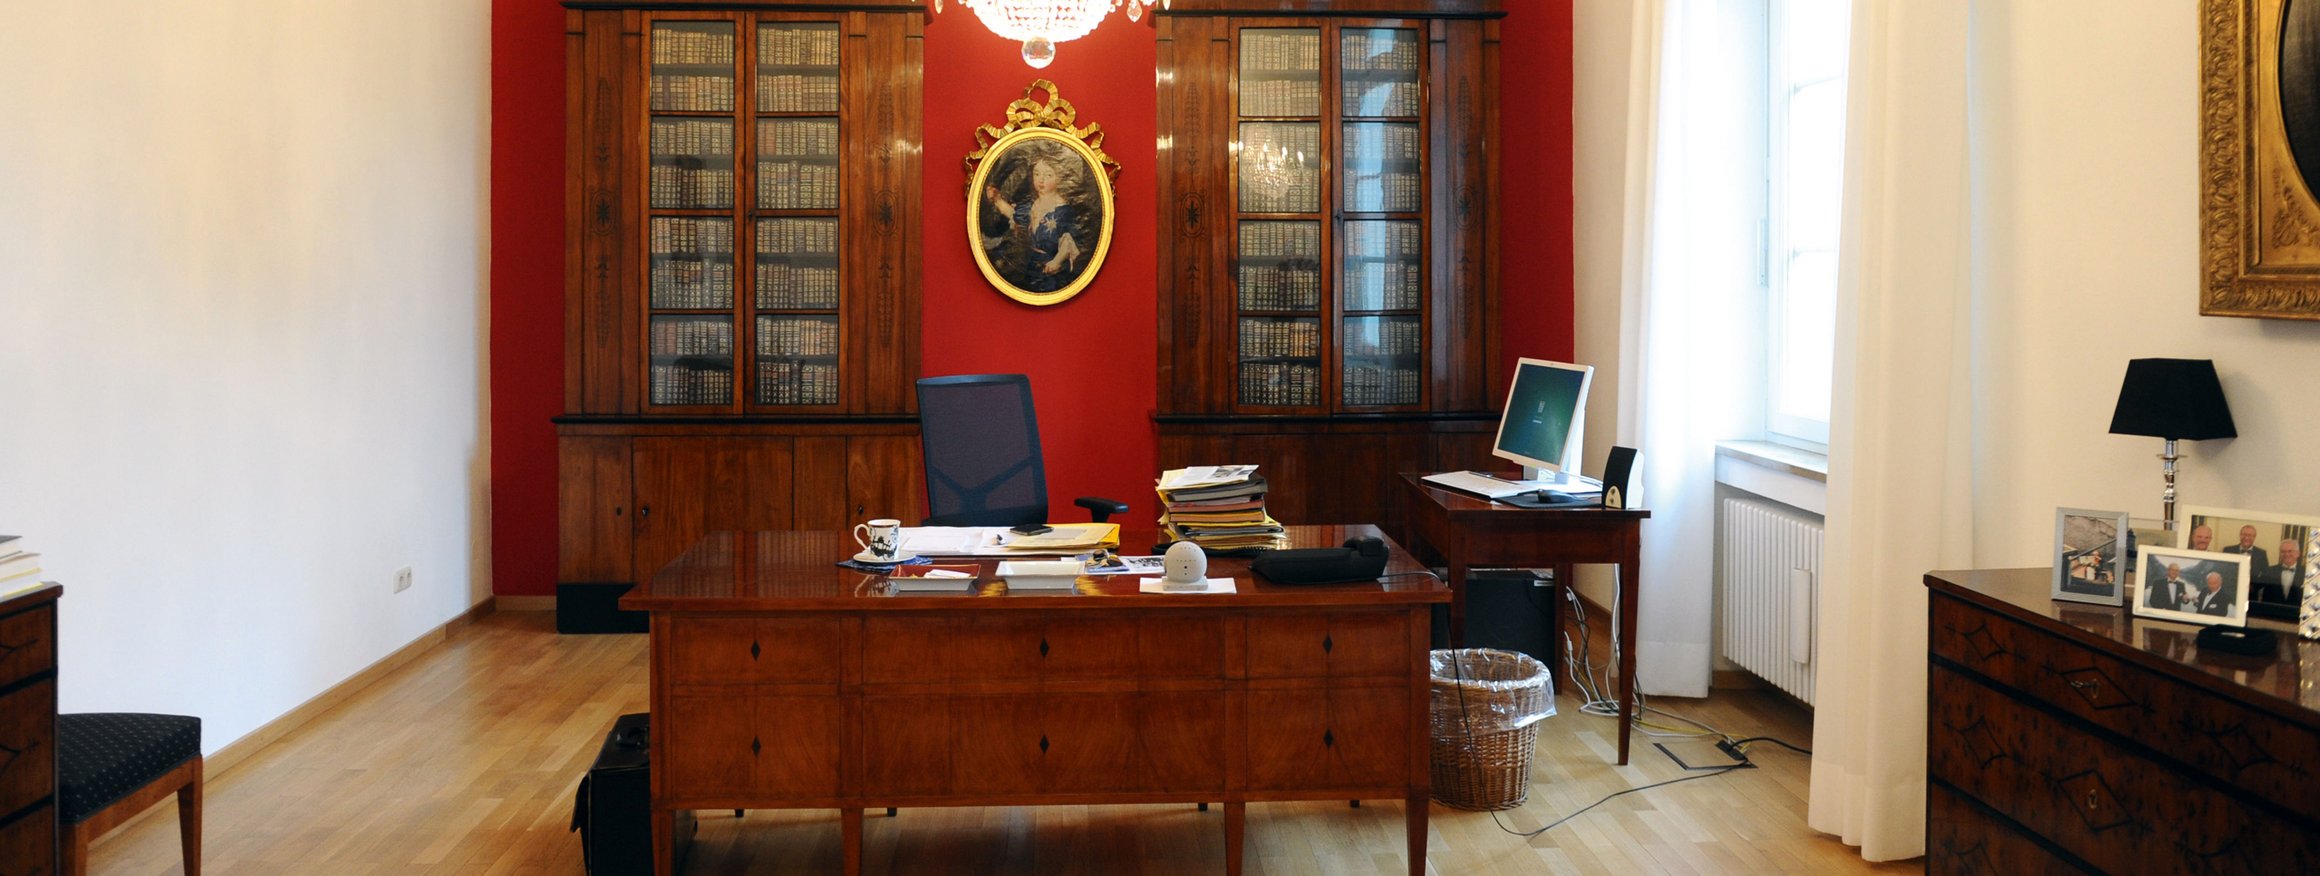 Das Bürozimmer einer Führungskraft mit antiken Schreibtisch, Aktenstapel, Bildschirm und einer Bibliothek im Hintergrund mit einem altertümlichen Gemälde an der rot gestrichenen Wand, an der Decke der Kronleuchter